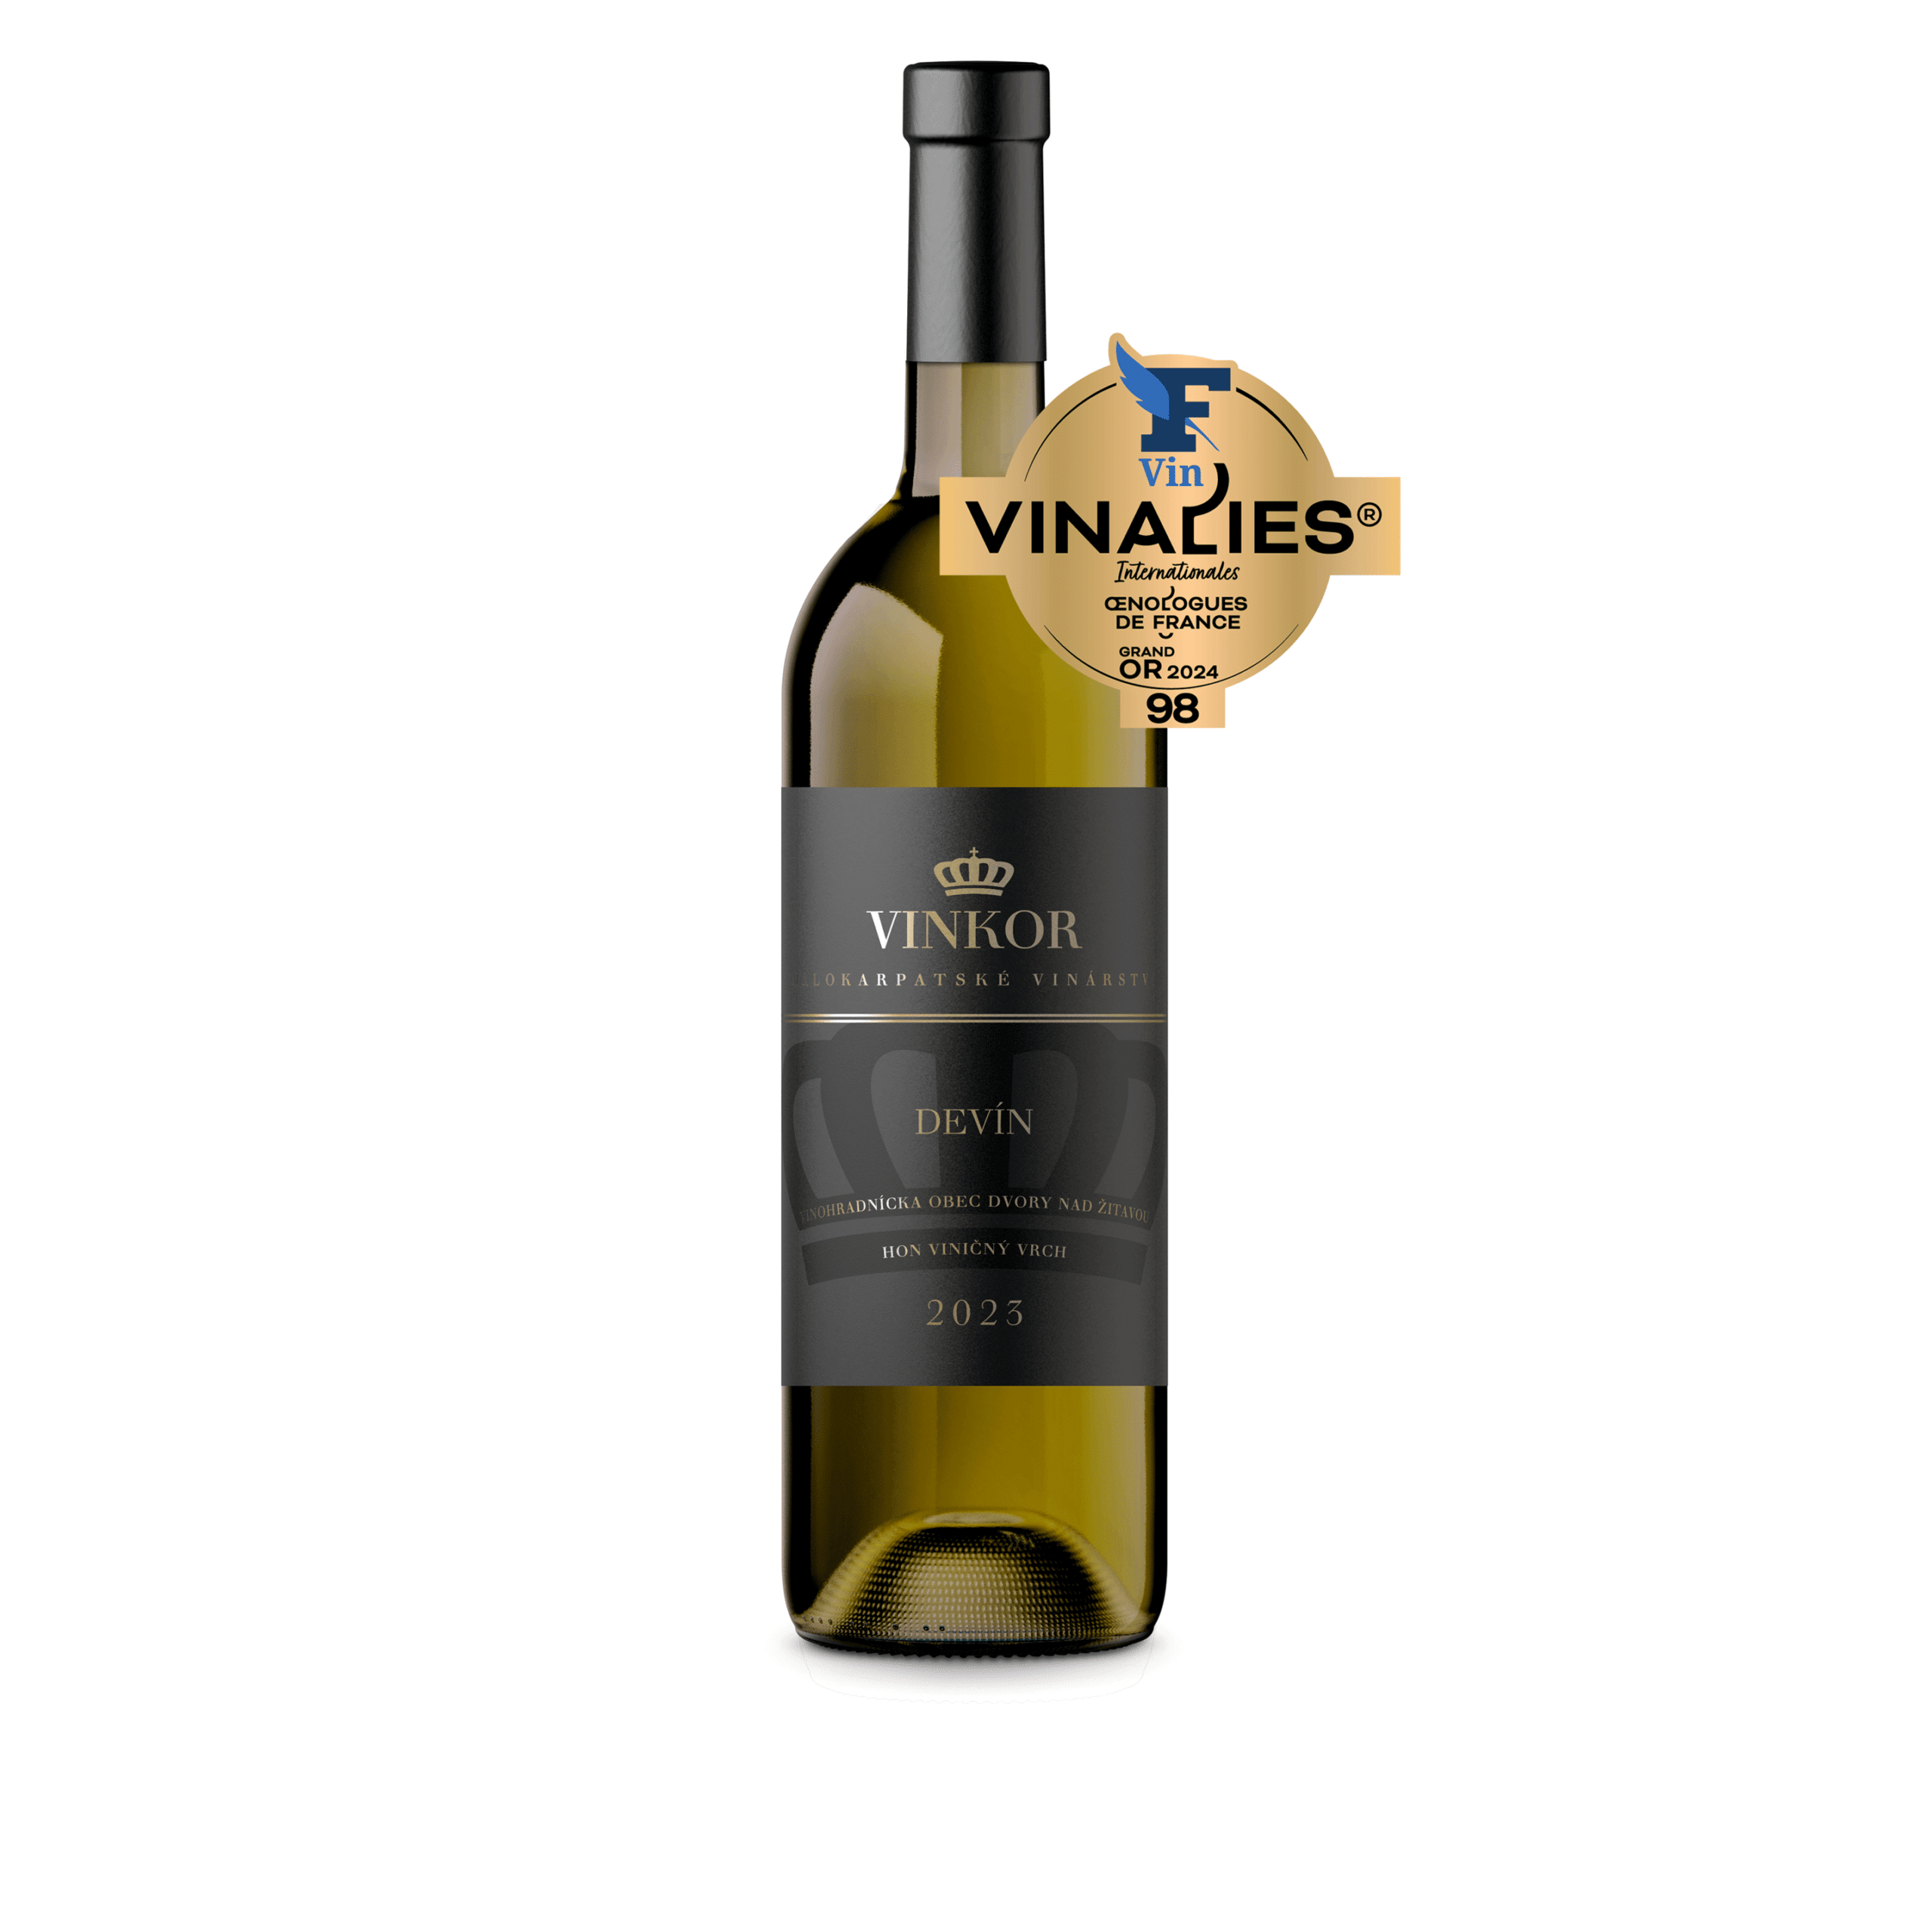 Biele suché víno Devín 2023 z rodinného vinárstva Vinkor s bodovým hodnotením 98 z Vinalies Internationales